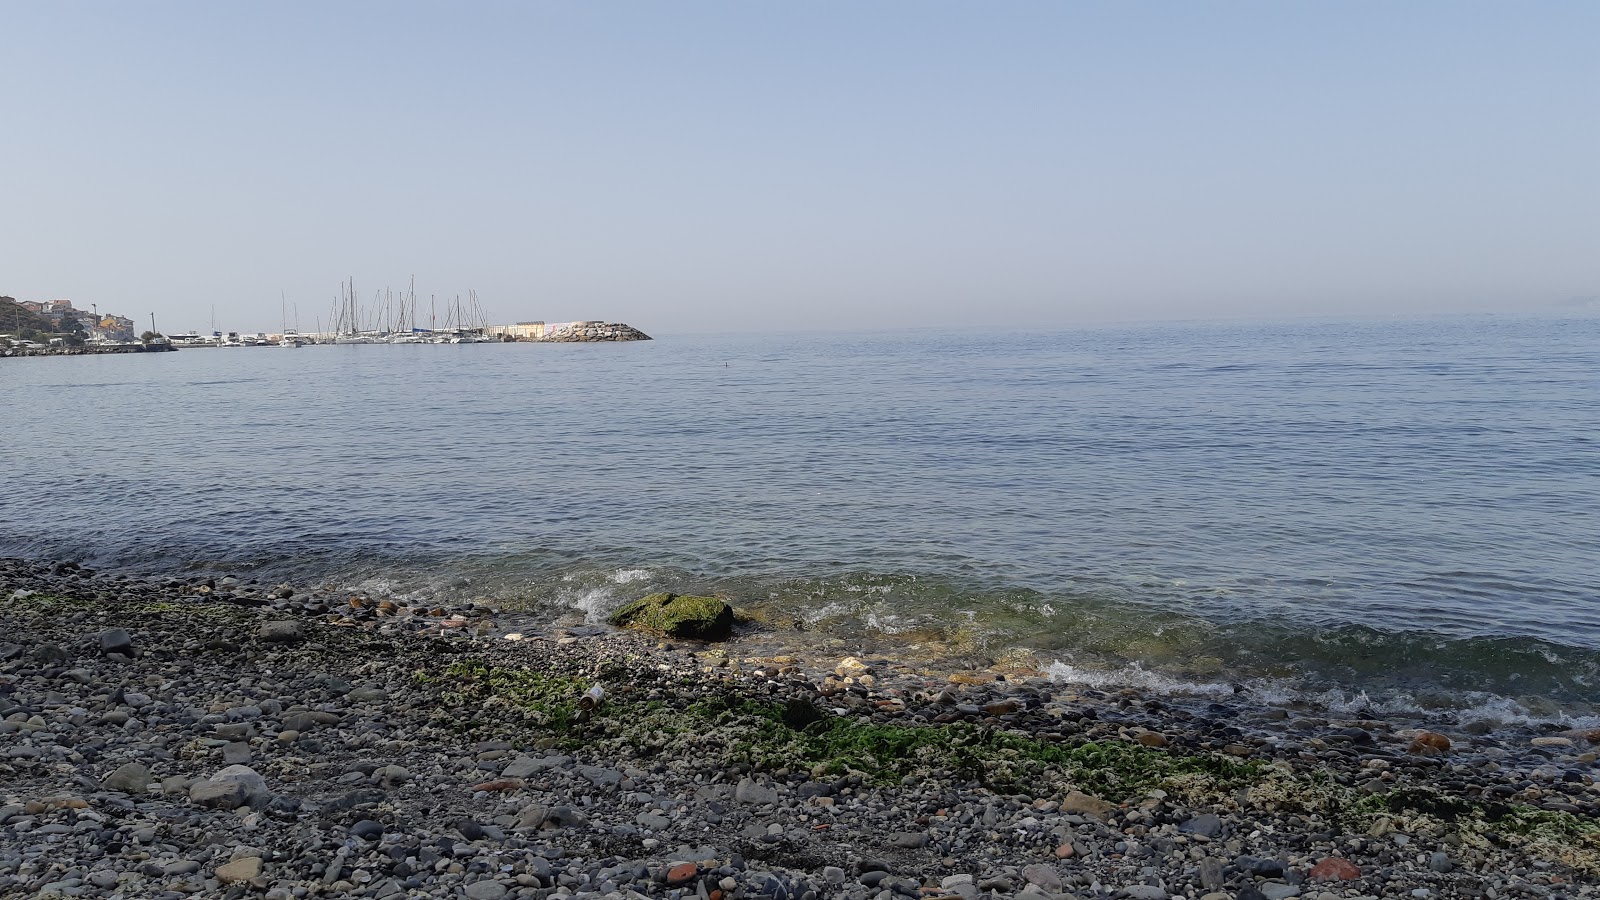 Zeytinbagi Halk Plaji的照片 具有部分干净级别的清洁度